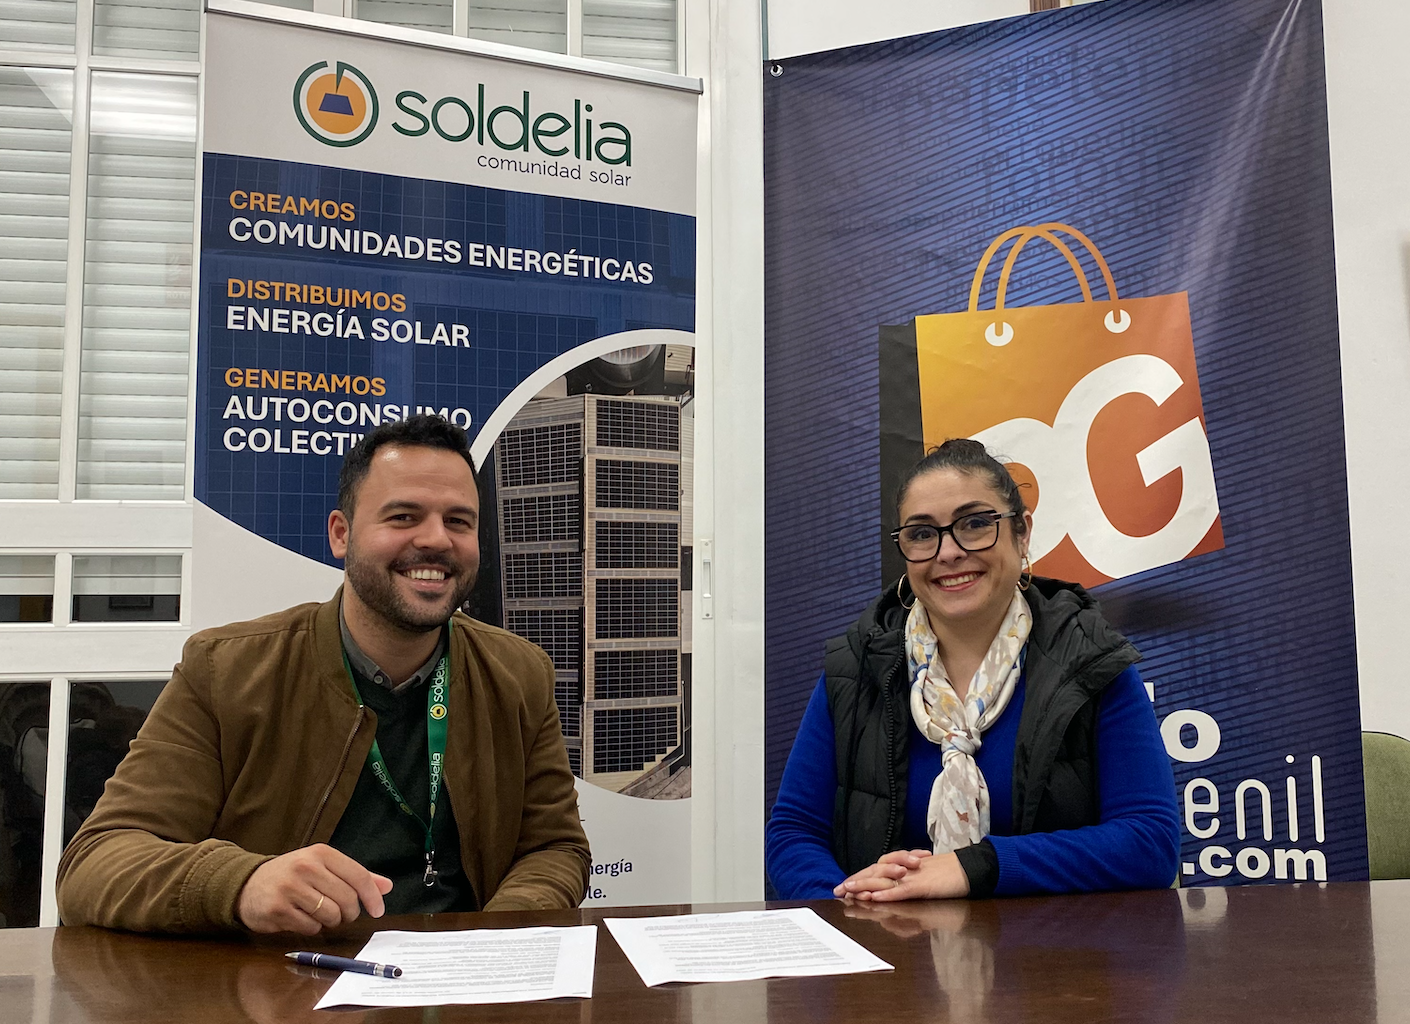 Soldelia Y Comercio puente genil IMPULSAN EL CONSUMO DE ENERGÍA SOLAR ENTRE establecimientos SIN TEJADO PARA INSTALAR PLACAS SOLARES